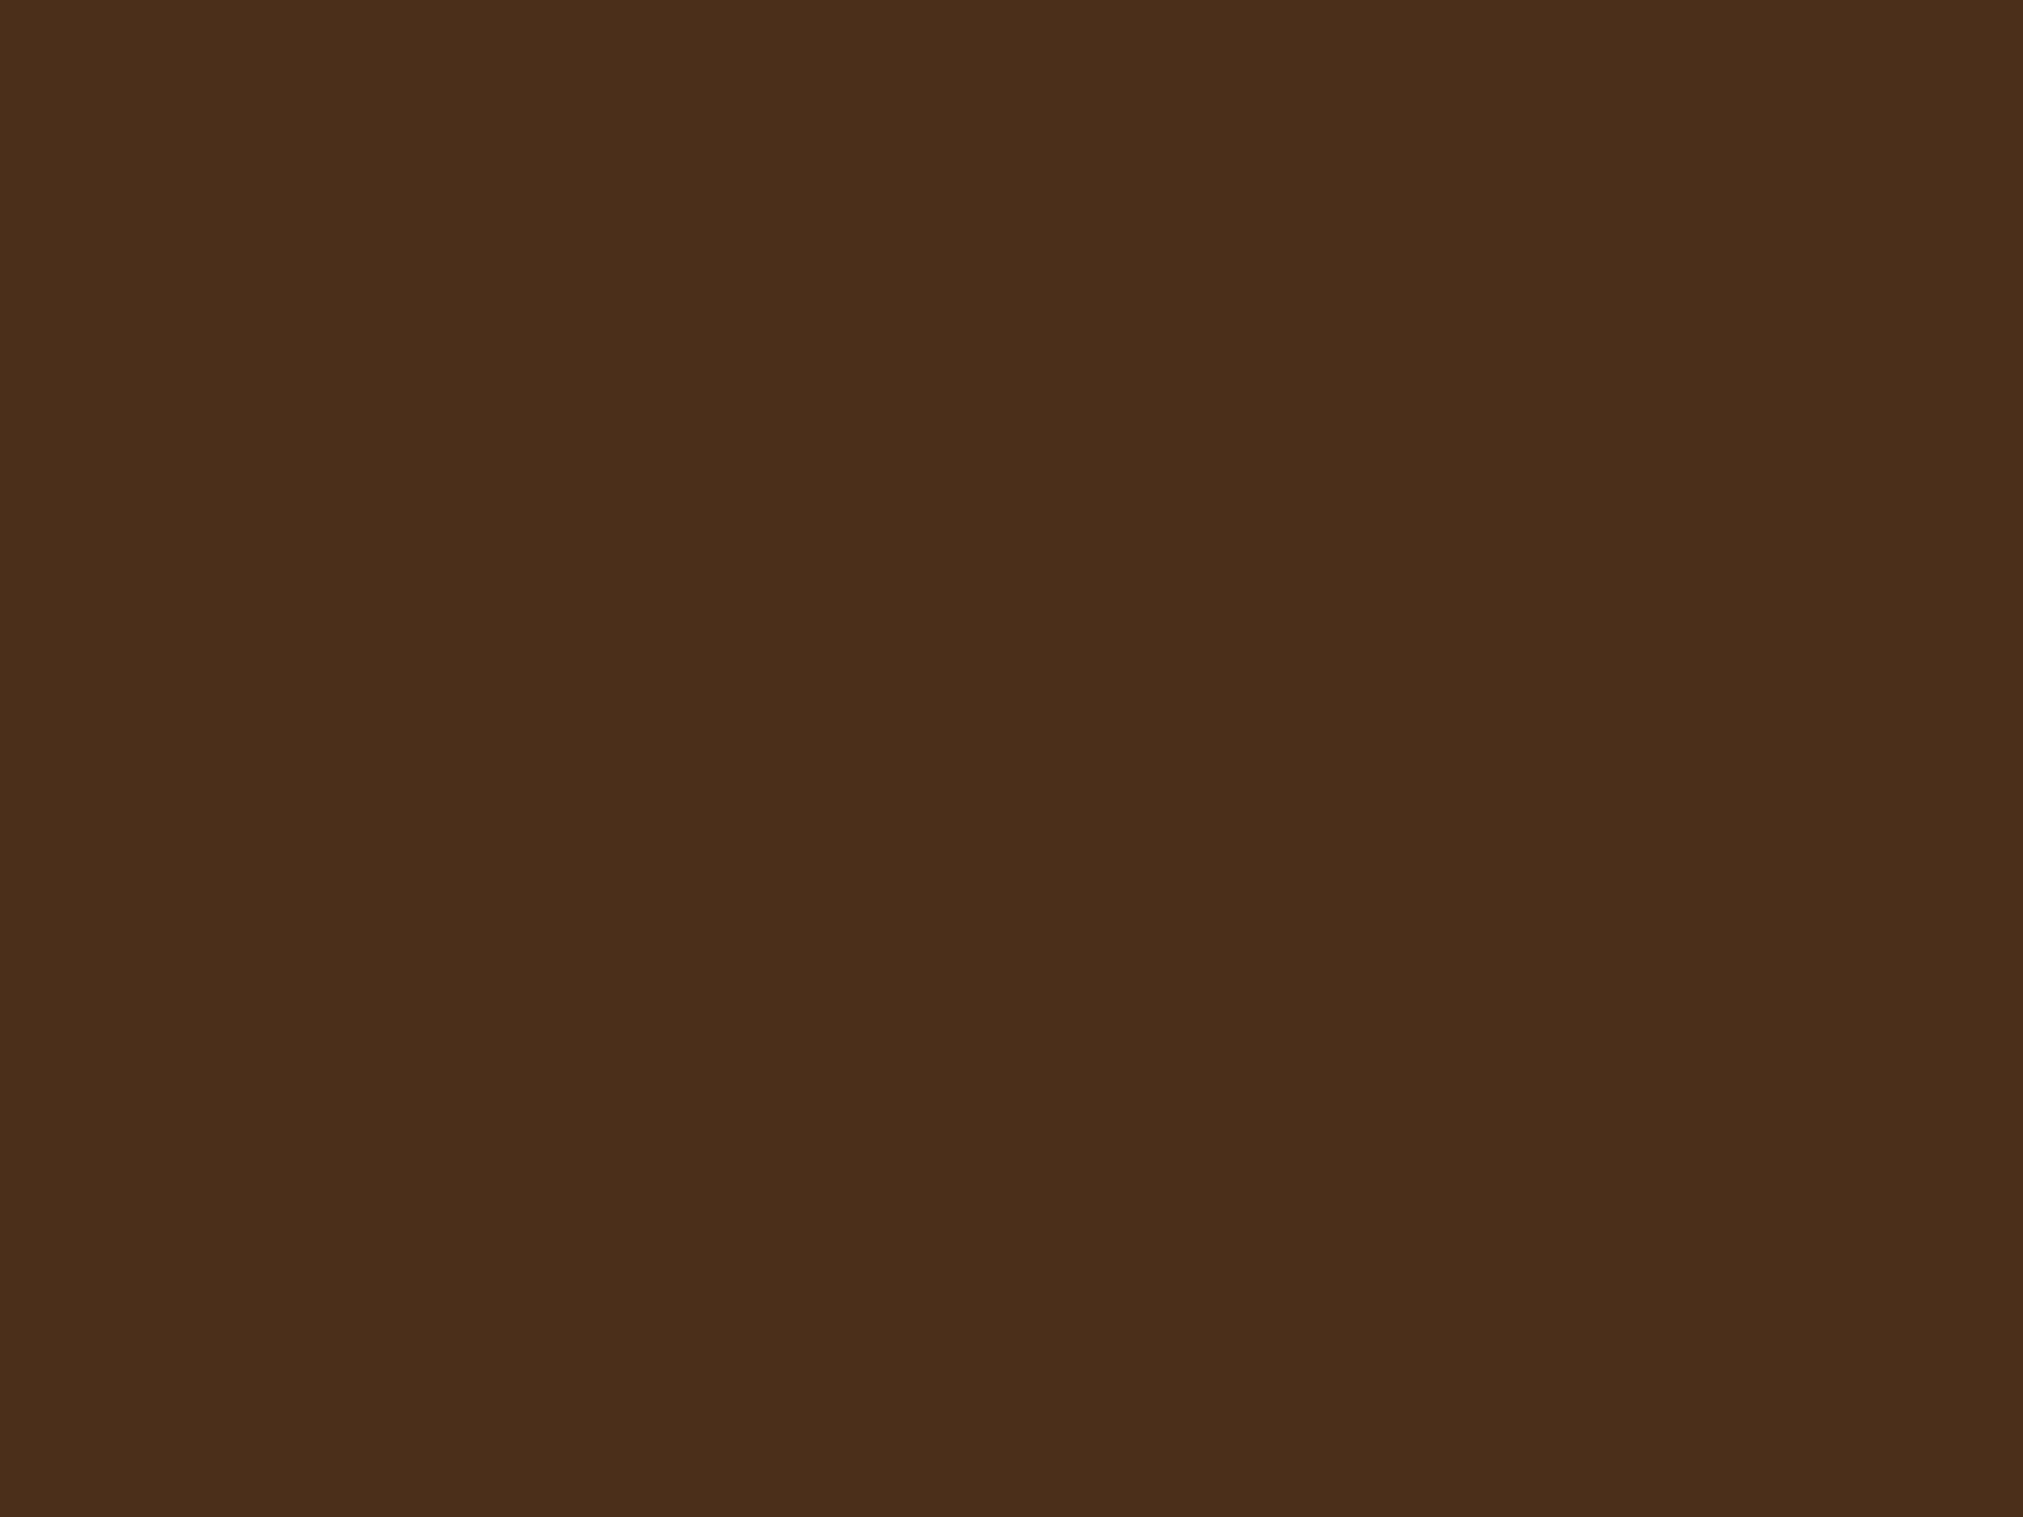 Константин Маковский. Свадебный пир в боярской семье XVII столетия (фрагмент). 1883. Музей Хиллвуд, Вашингтон, США